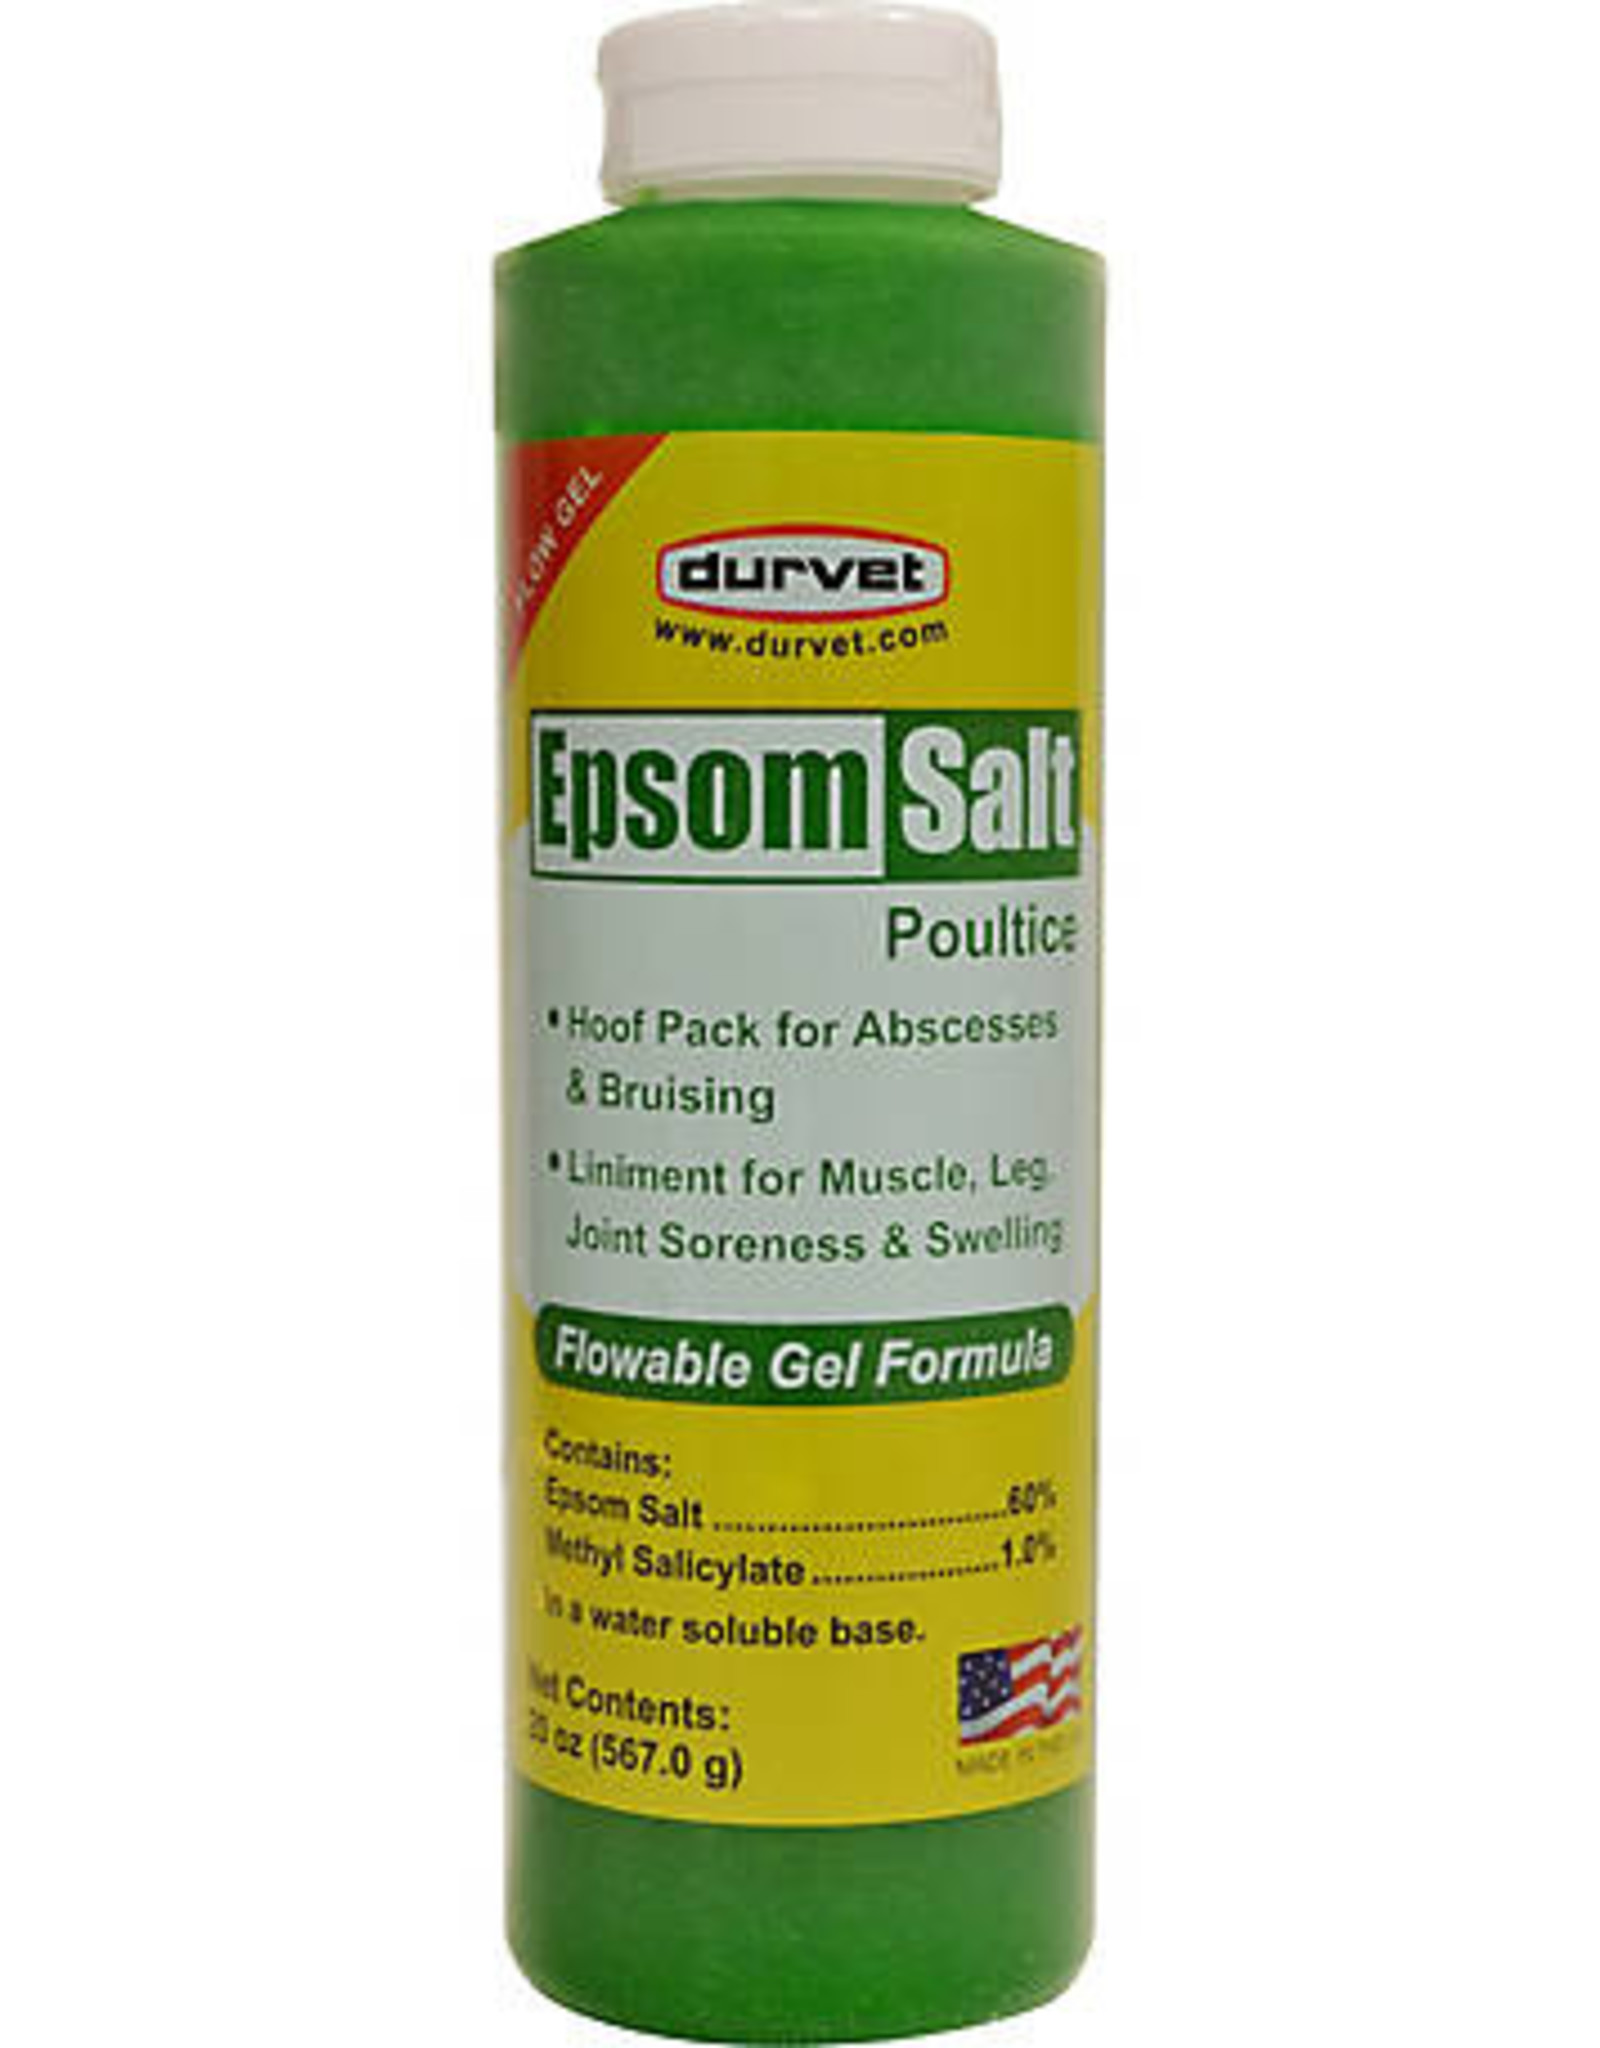 Epson Salt Poultice